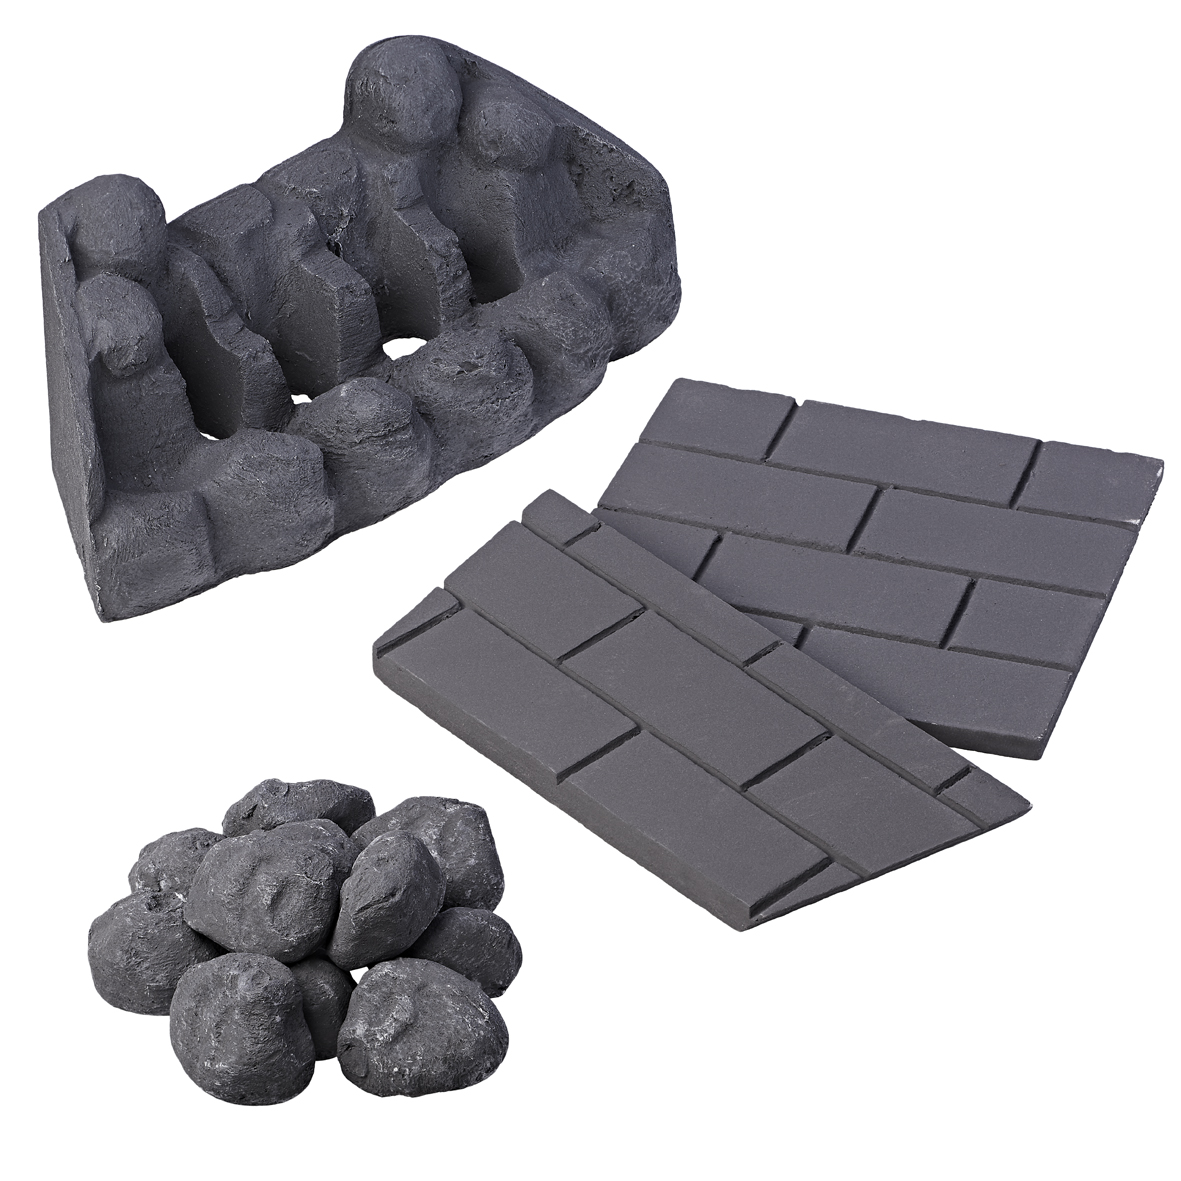 Excelsior Slimline Coal Effect Ceramic Set